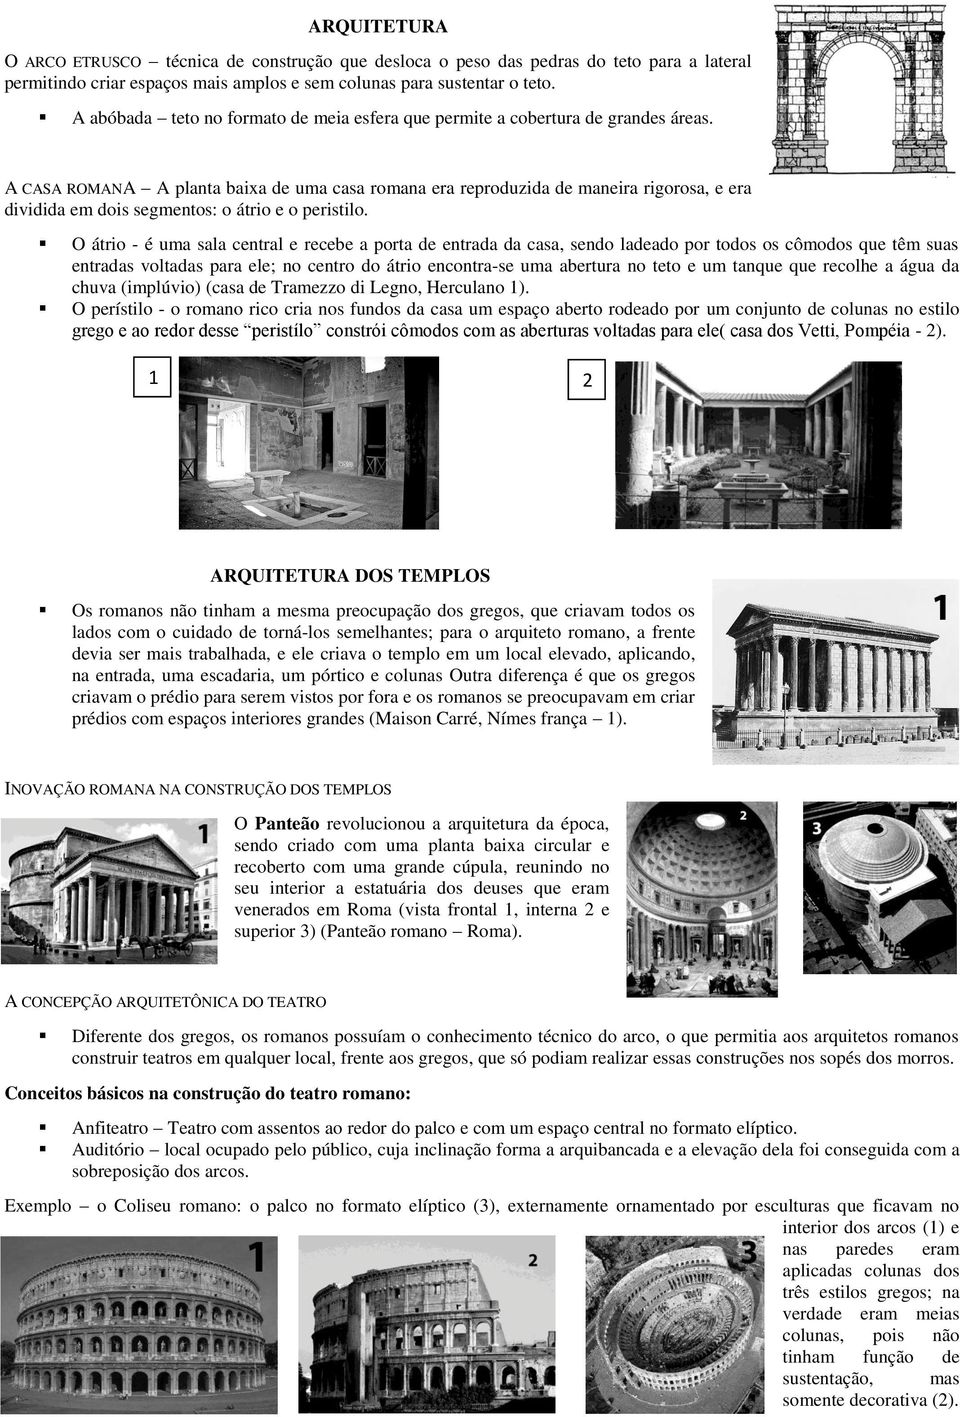 A CASA ROMANA A planta baixa de uma casa romana era reproduzida de maneira rigorosa, e era dividida em dois segmentos: o átrio e o peristilo.